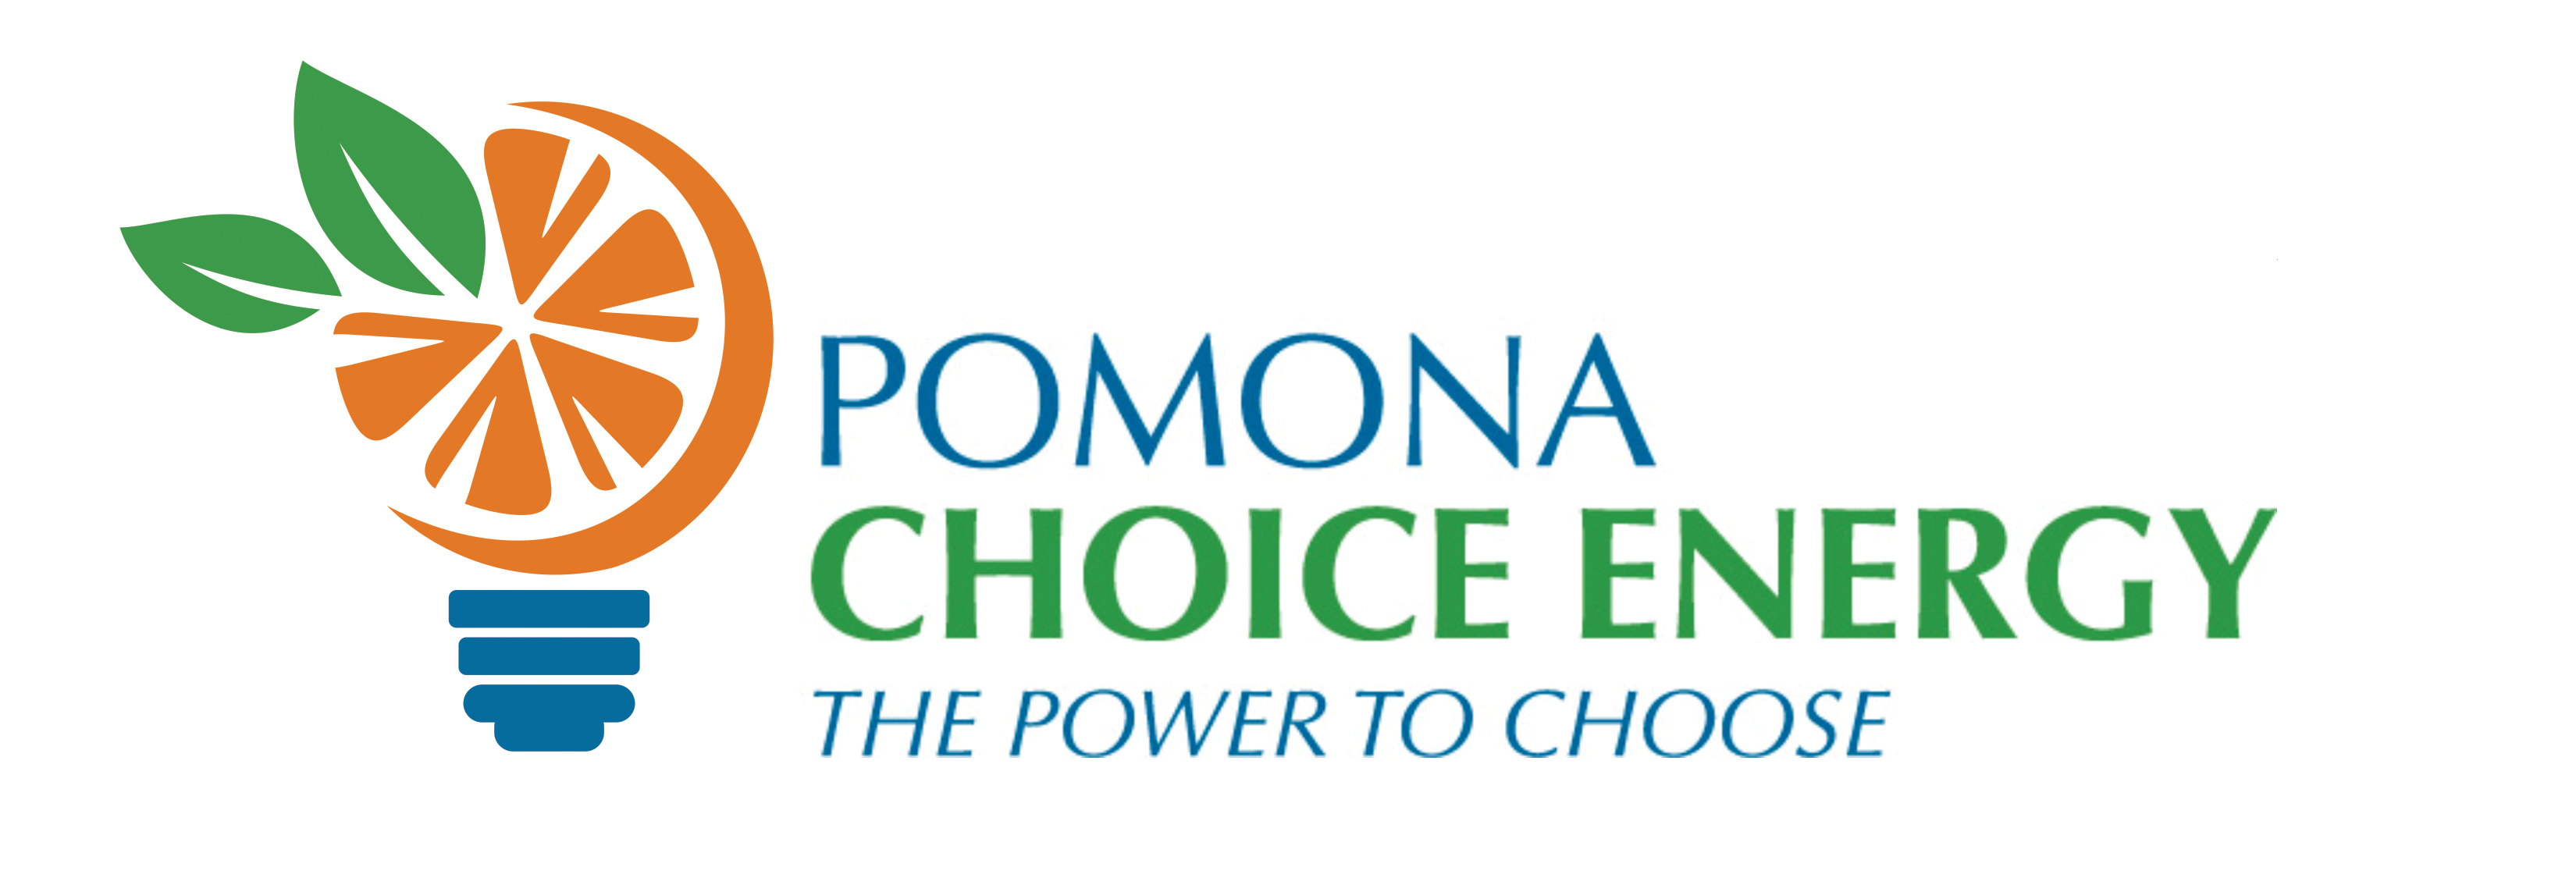 Pomona Choice